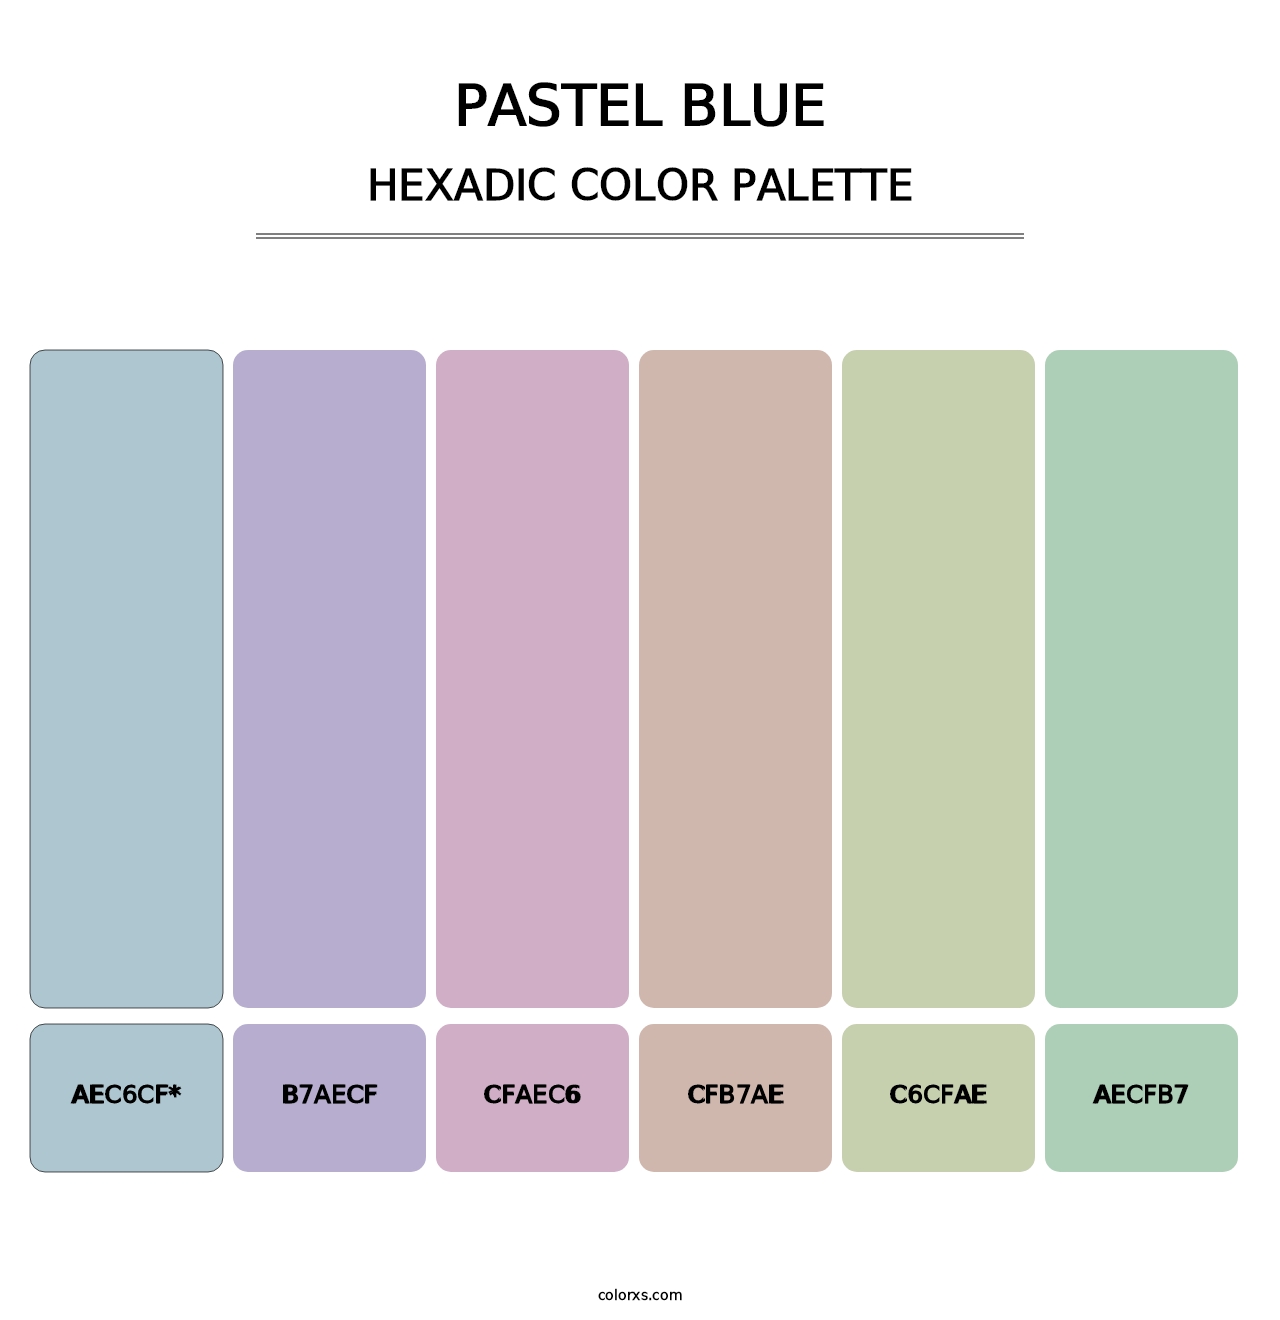 Pastel Blue - Hexadic Color Palette